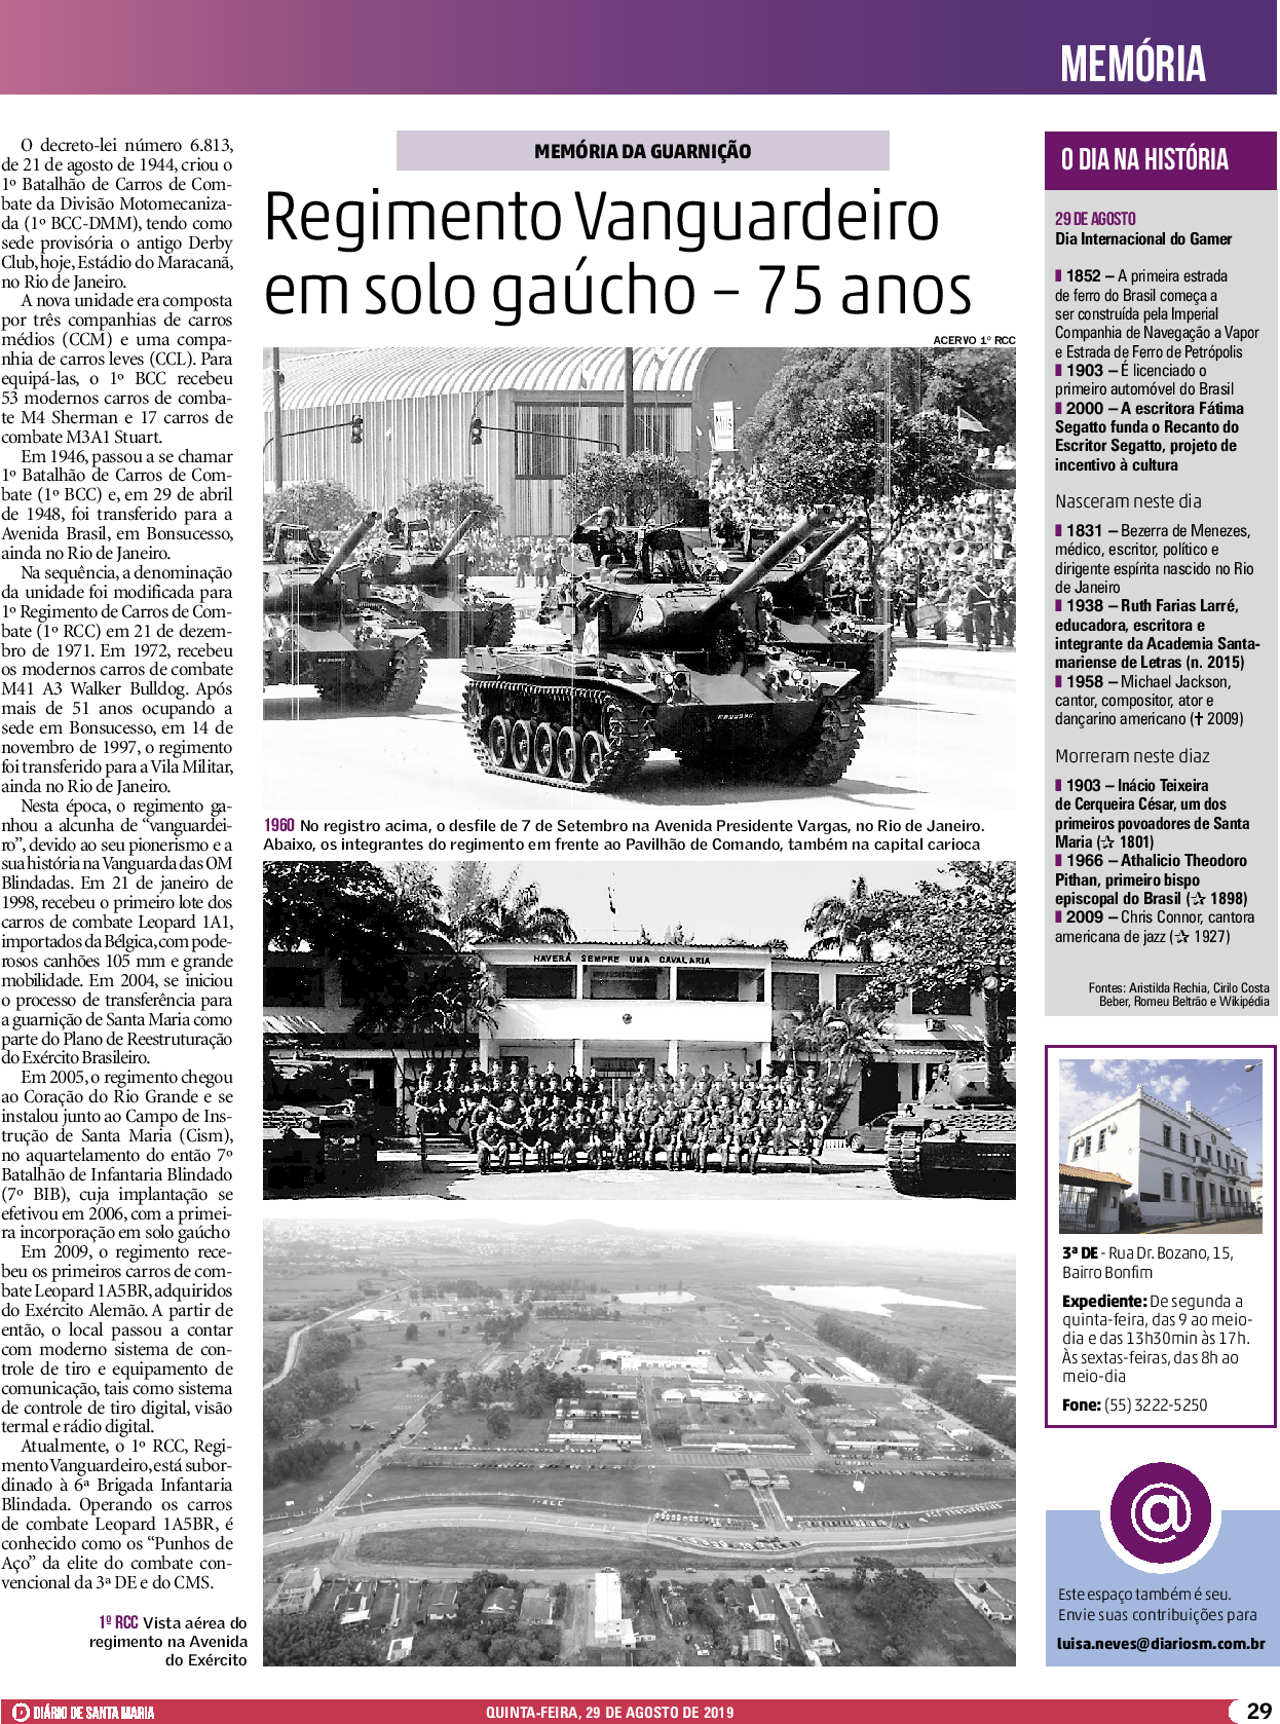 Calaméo - Revista do Exército Brasileiro – 1º Quadrimestre de 2020